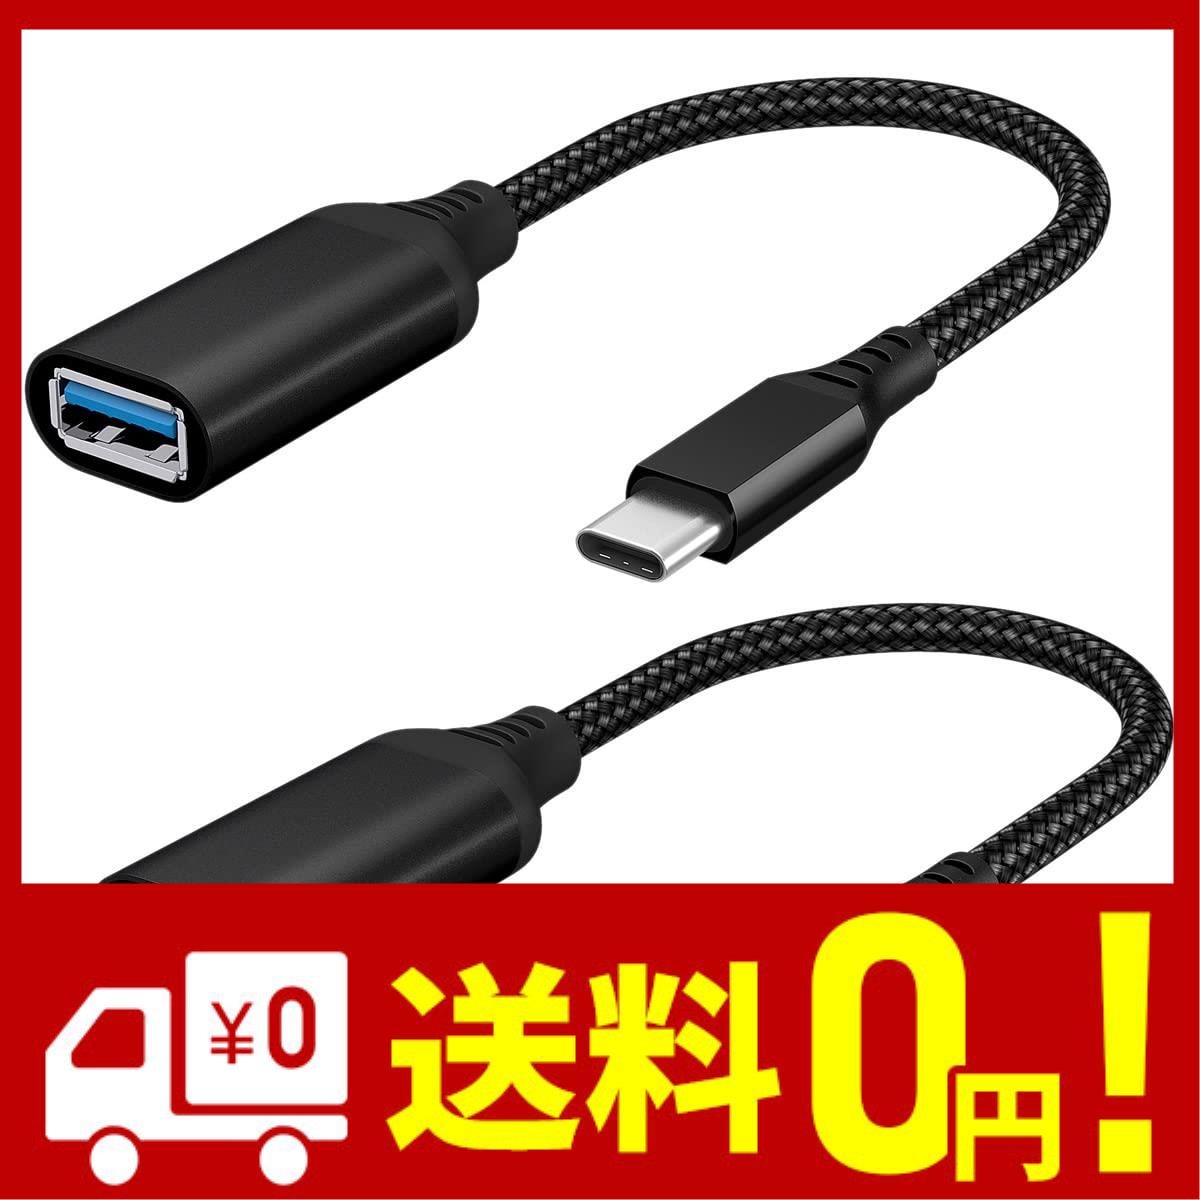 Amazonブランド Eono イオーノ - USB Type C 変換アダプタ 2個セットType C to USB 3.0 メス OTG ケーブル 5Gbps高速データ転送タイ